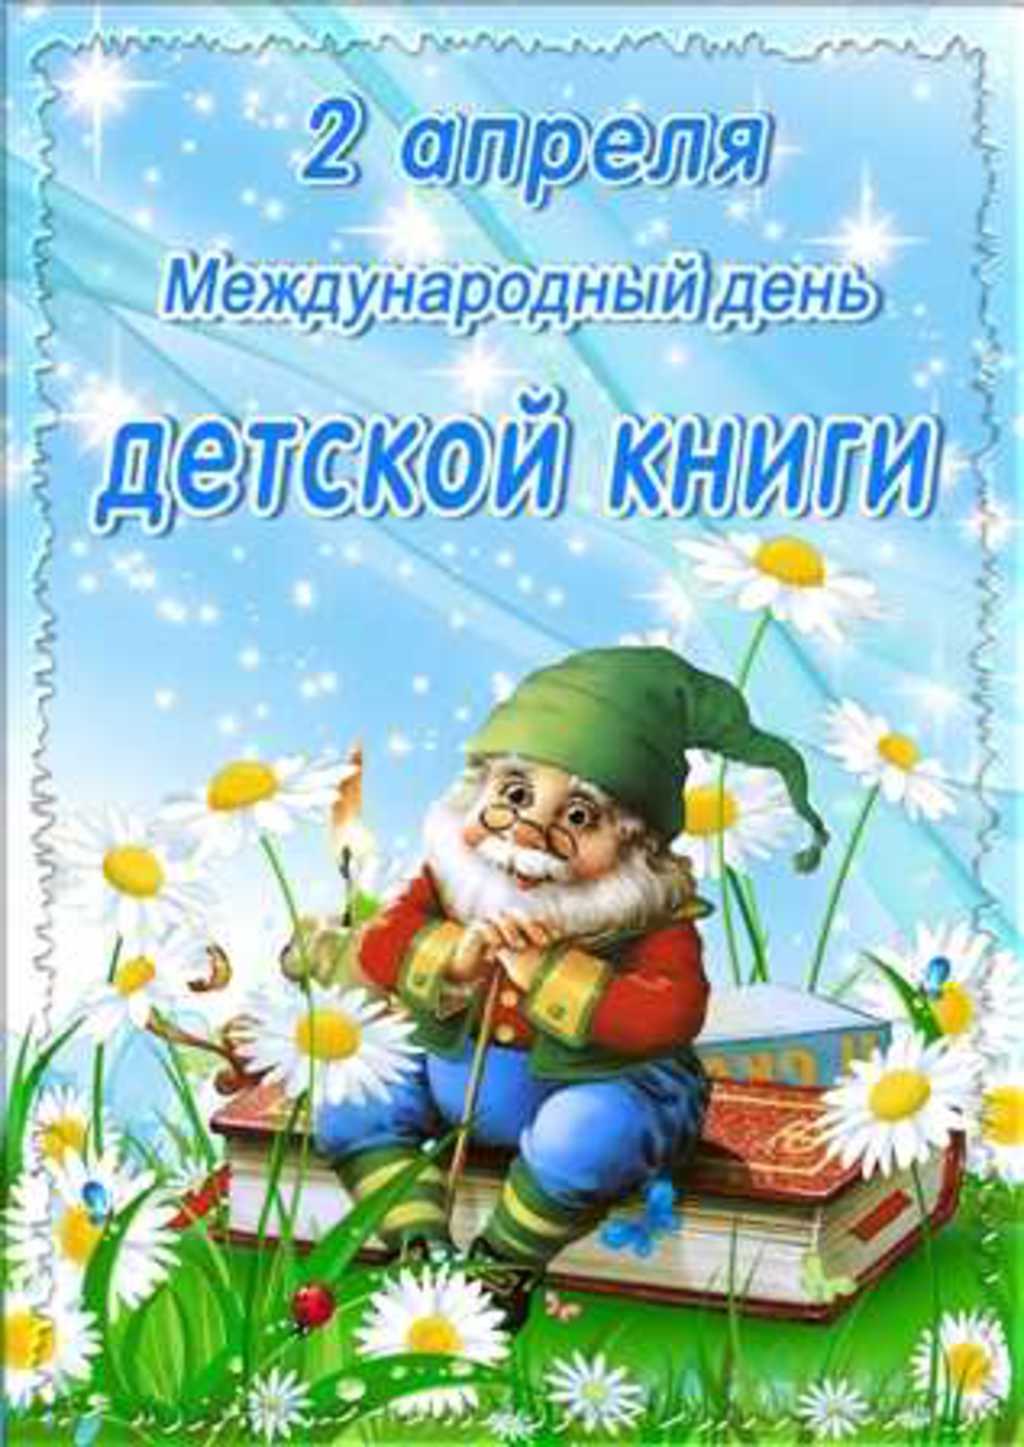 Новые Календарь праздников всемирный день детской книги бабушке